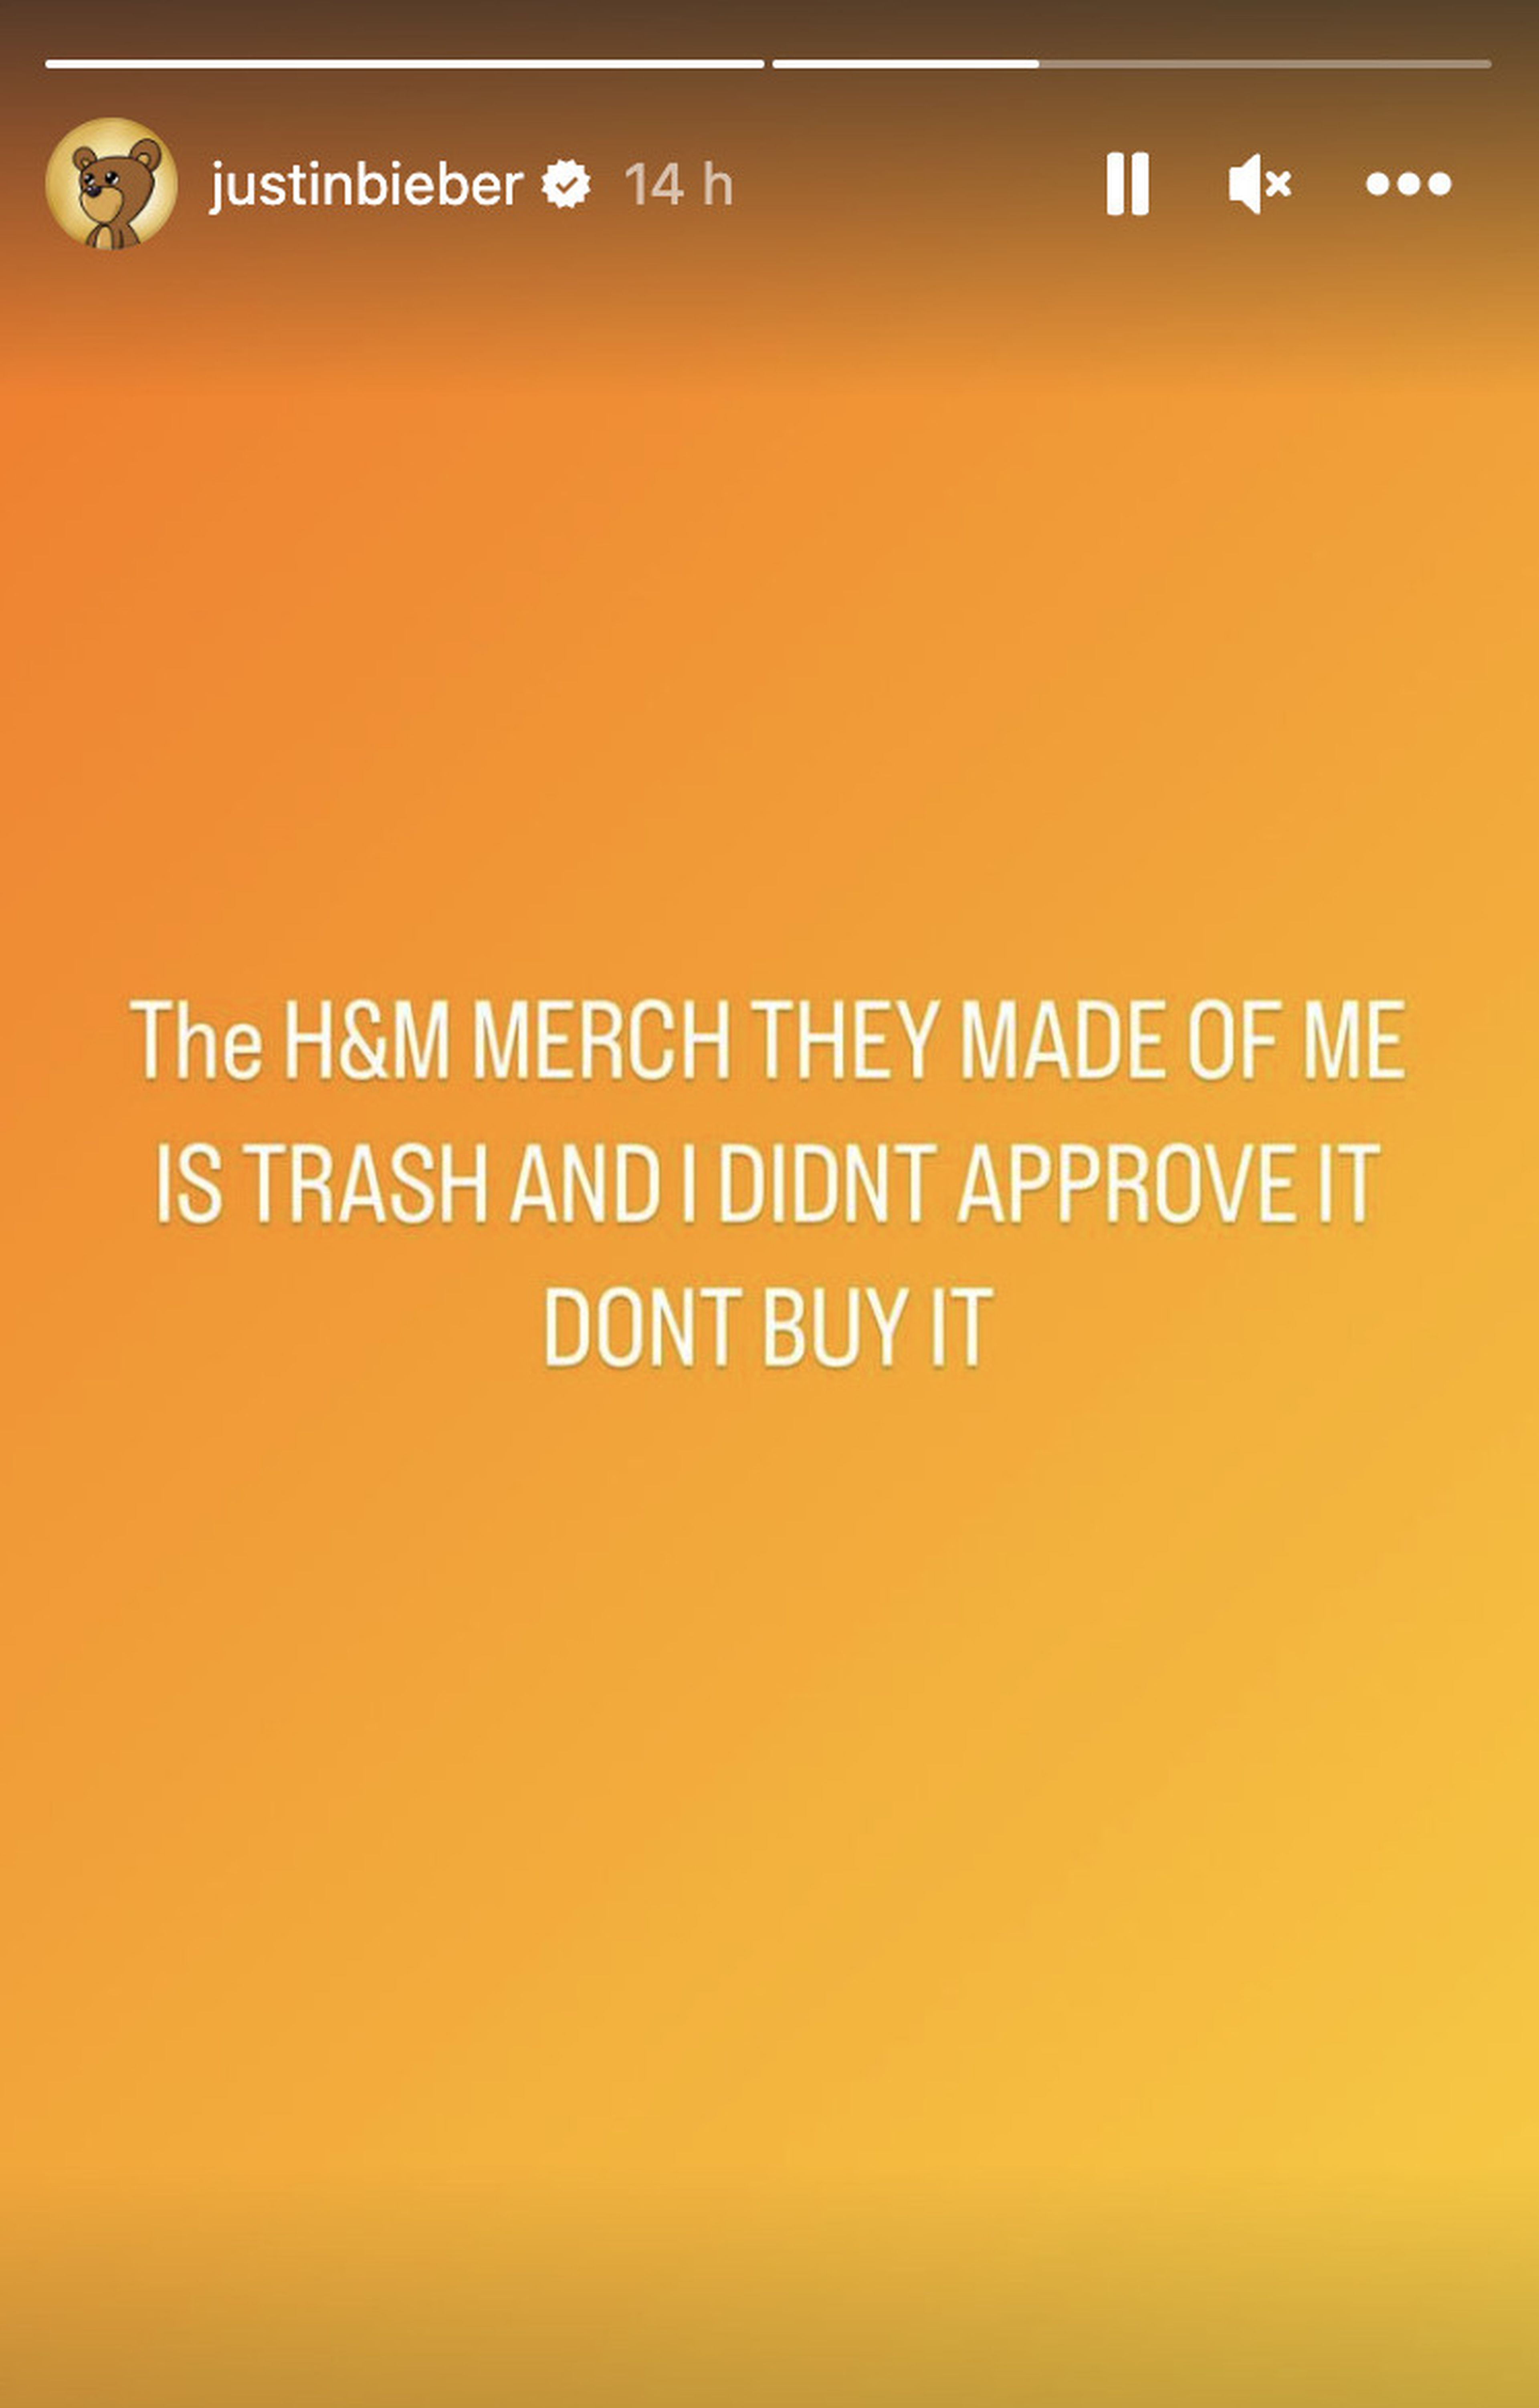 El cantante cataloga de 'basura' la colección de H&M.